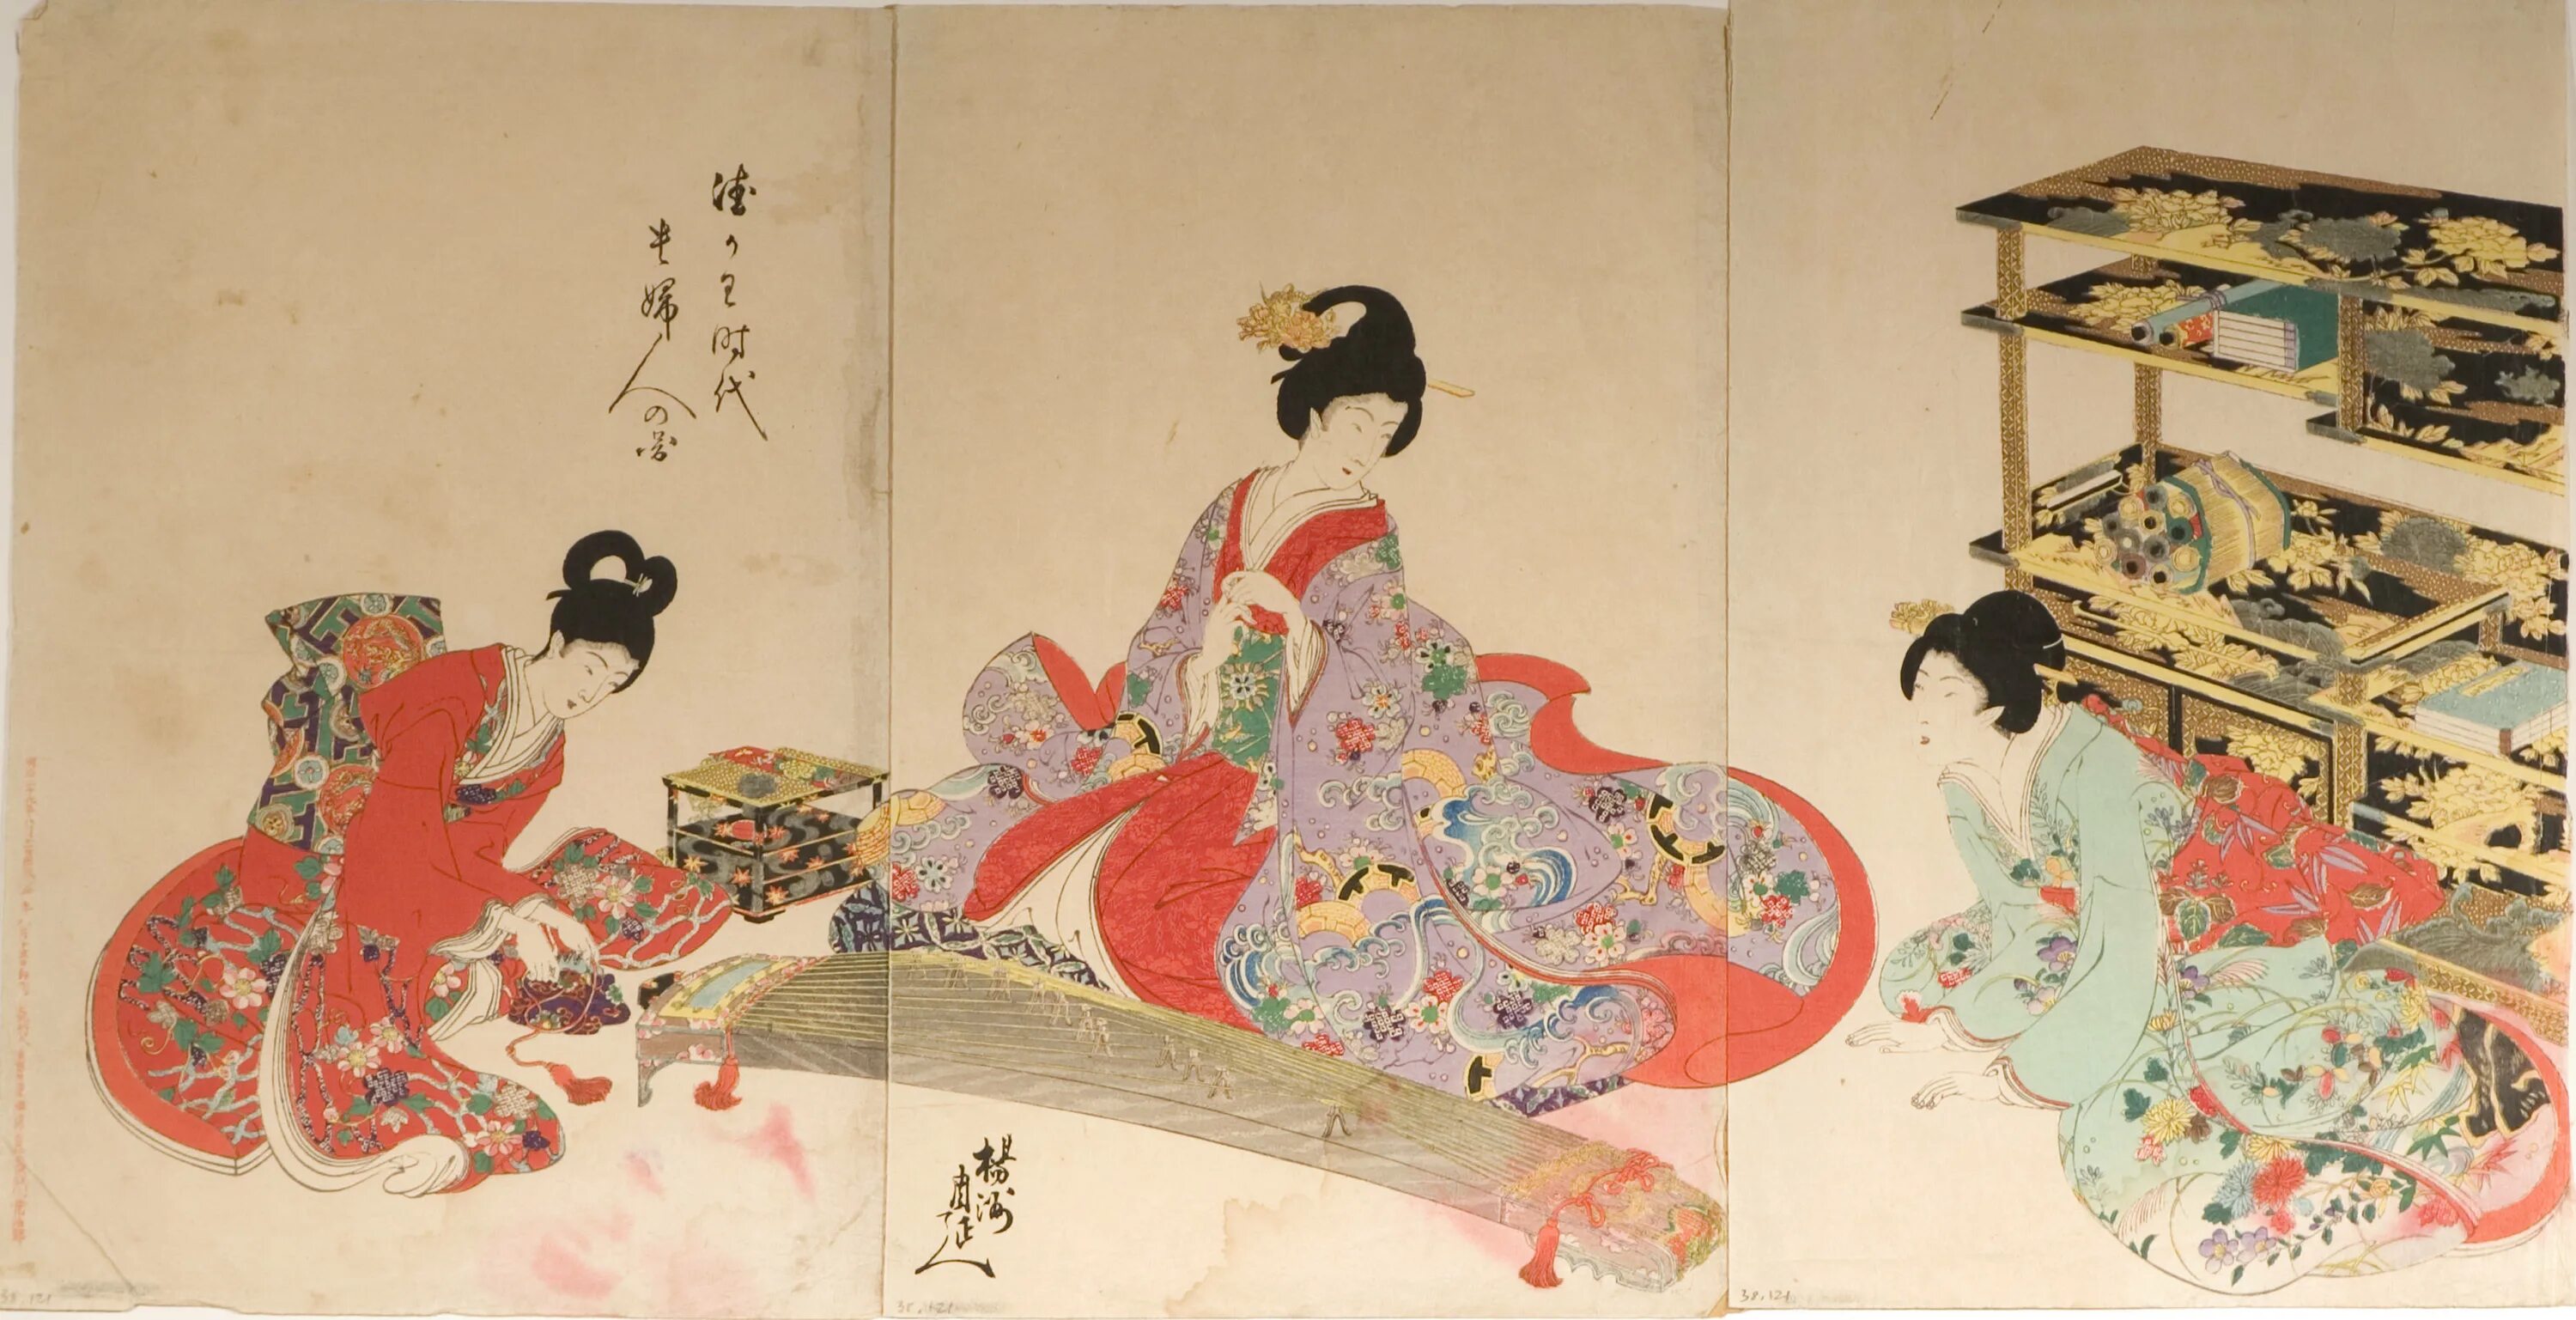 Япония раннего нового времени. Живопись Япония 19 век. Японские картины 19 века. Укие э 20 век. Японские художники 19 века картины.